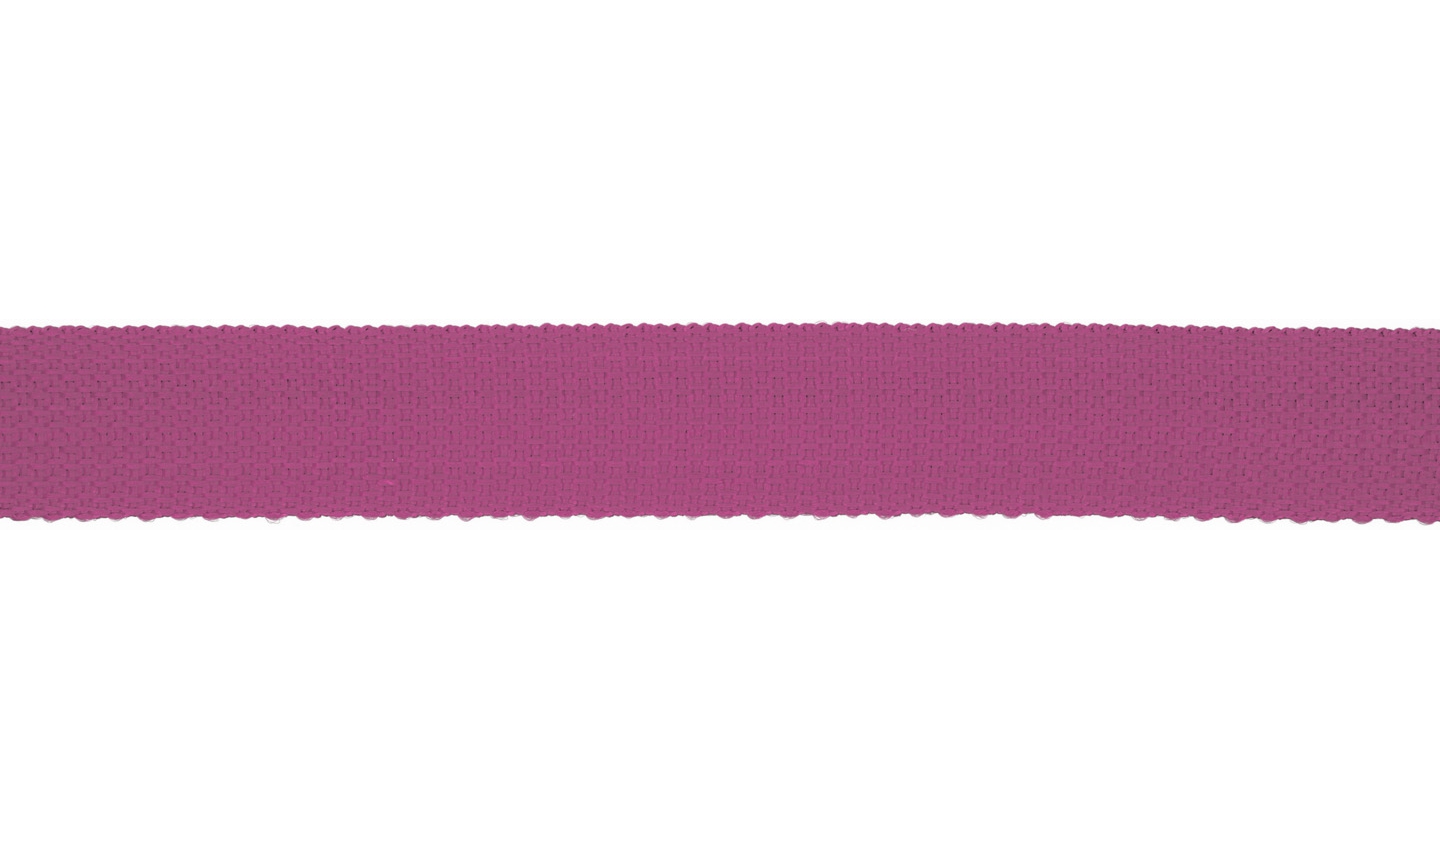 1m Gurtband 40 mm uni fuchsia pink